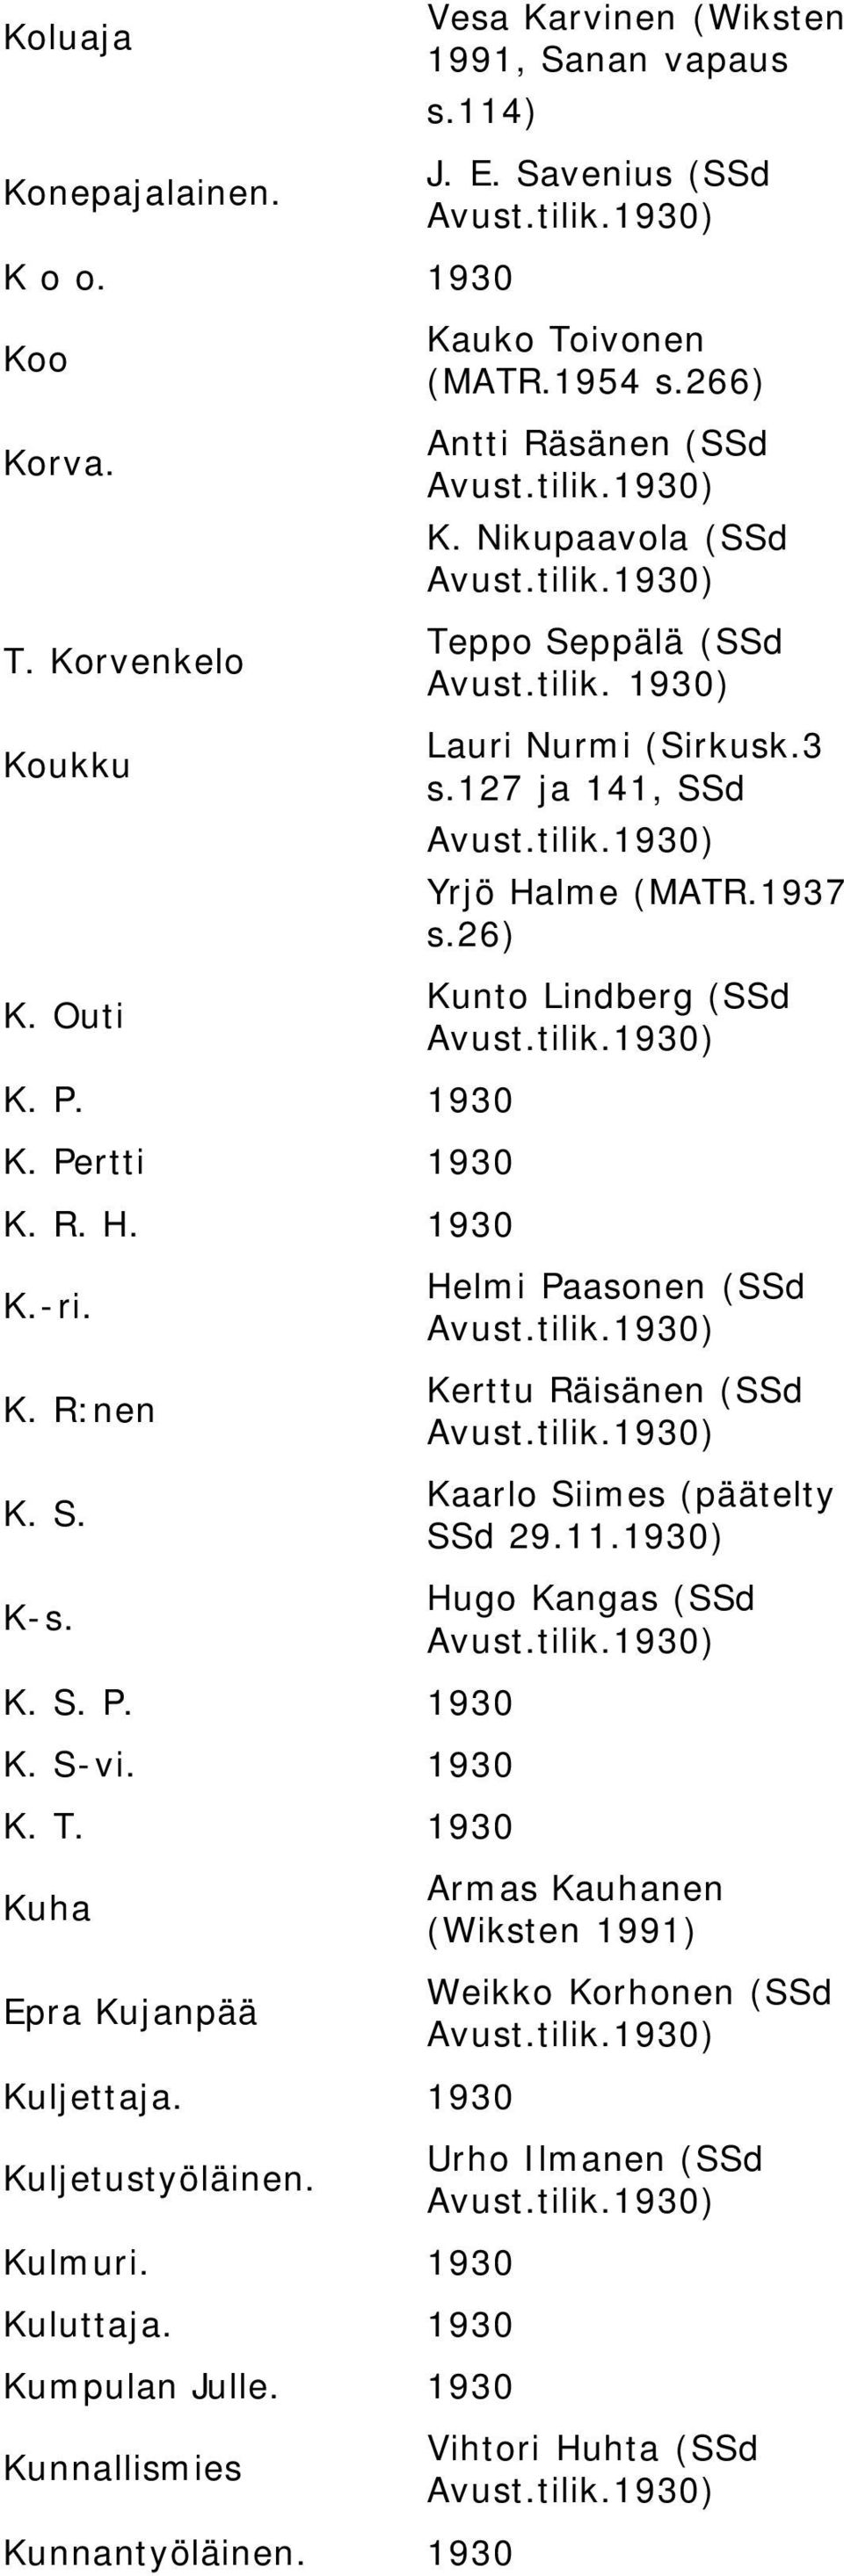 Savenius (SSd Kauko Toivonen (MATR.1954 s.266) Antti Räsänen (SSd K. Nikupaavola (SSd Teppo Seppälä (SSd Lauri Nurmi (Sirkusk.3 s.127 ja 141, SSd Yrjö Halme (MATR.1937 s.